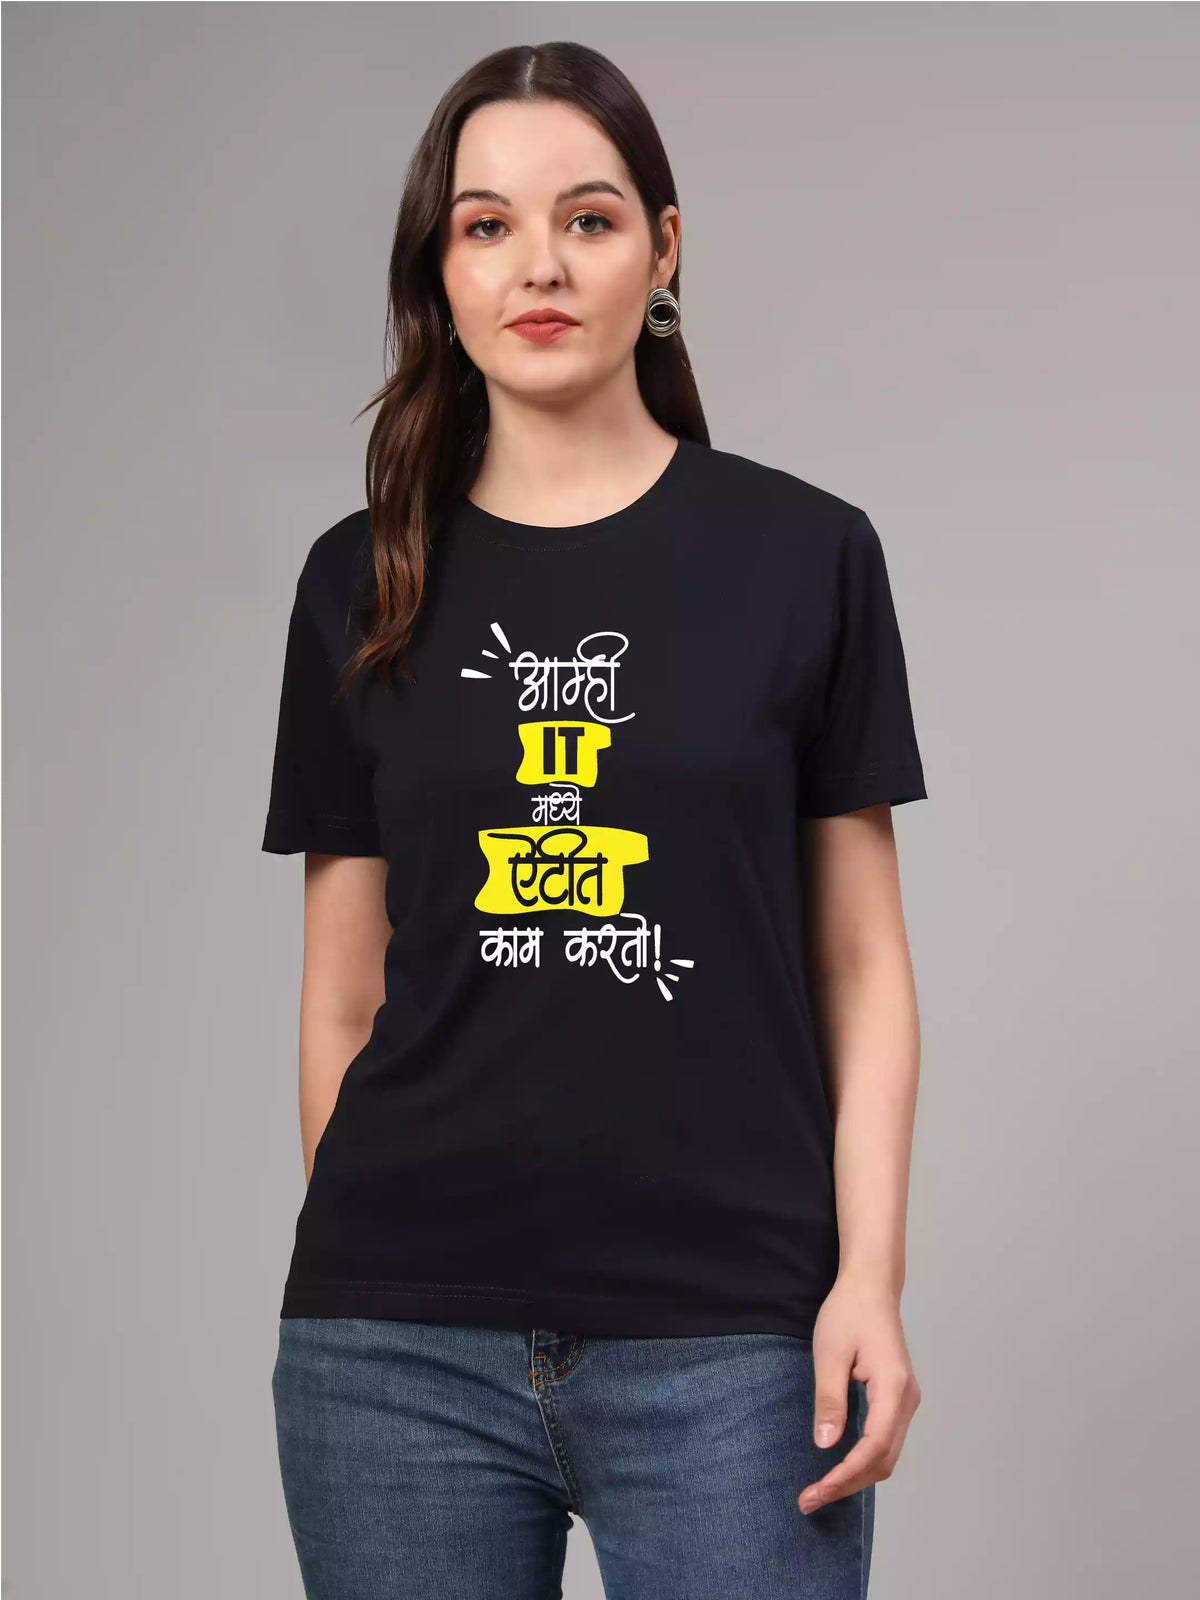 IT madhe - Sukhiaatma Unisex Marathi Graphic Printed T-shirt